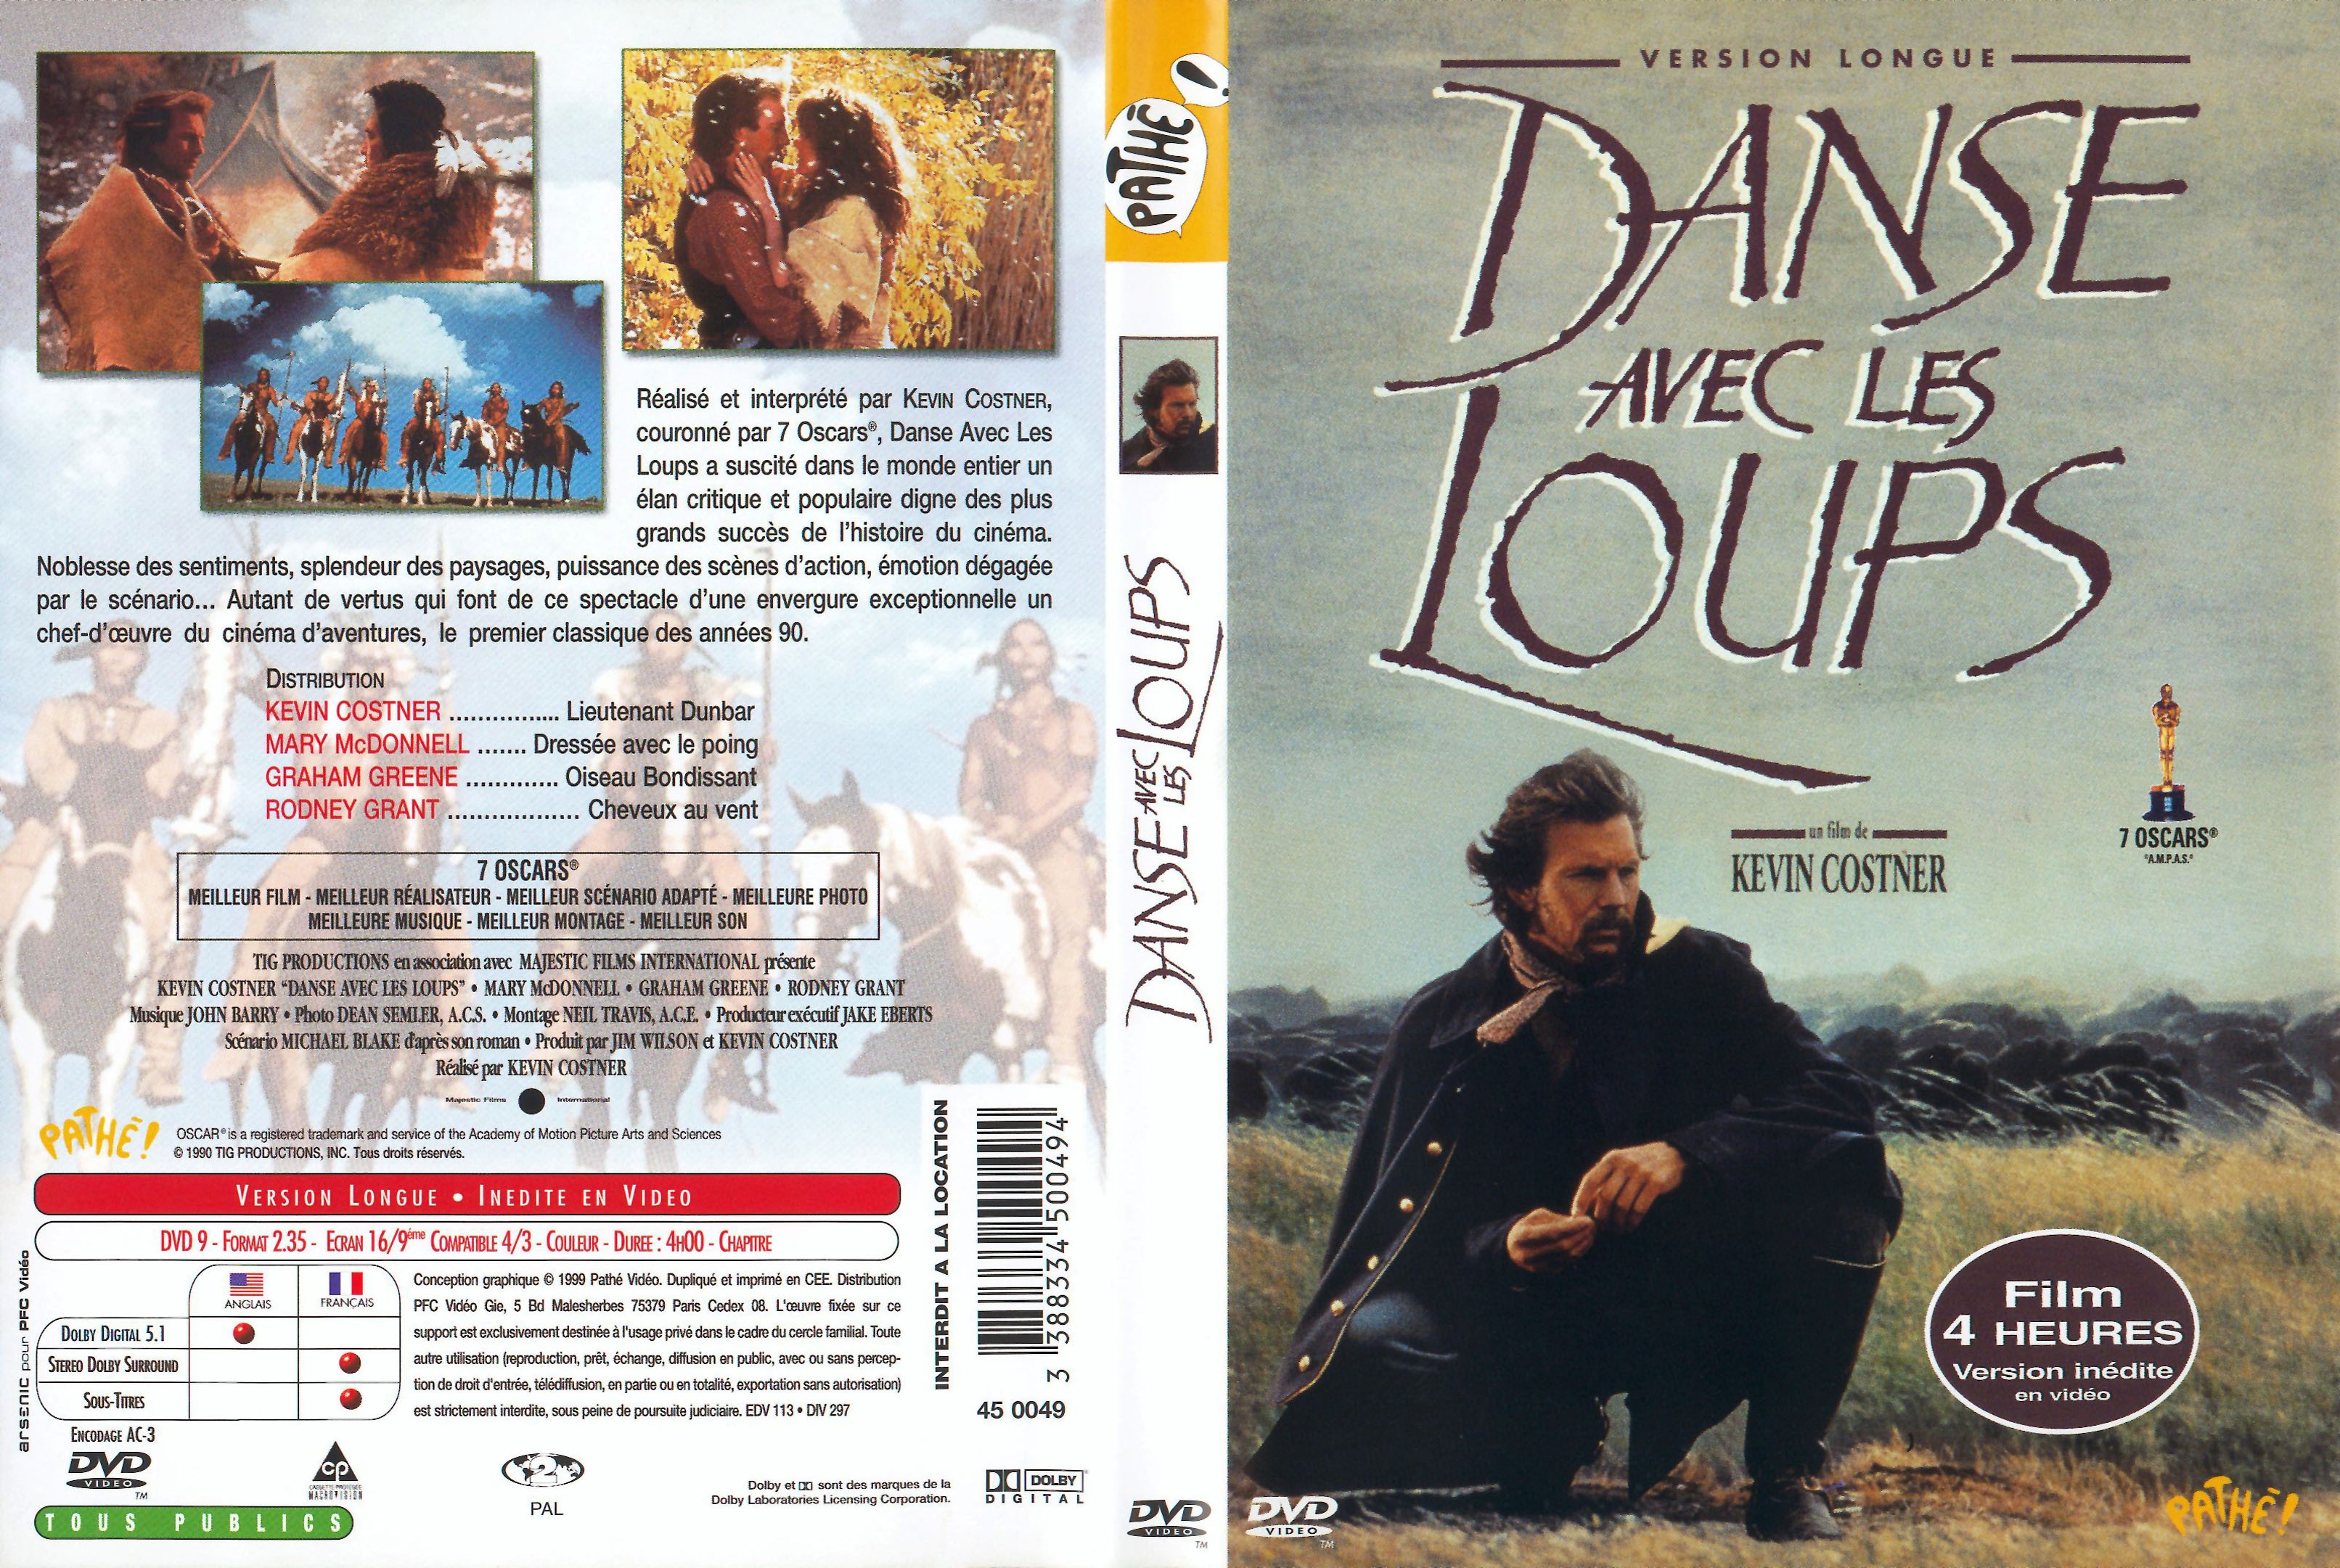 Jaquette DVD de Danse avec les loups - Cinéma Passion